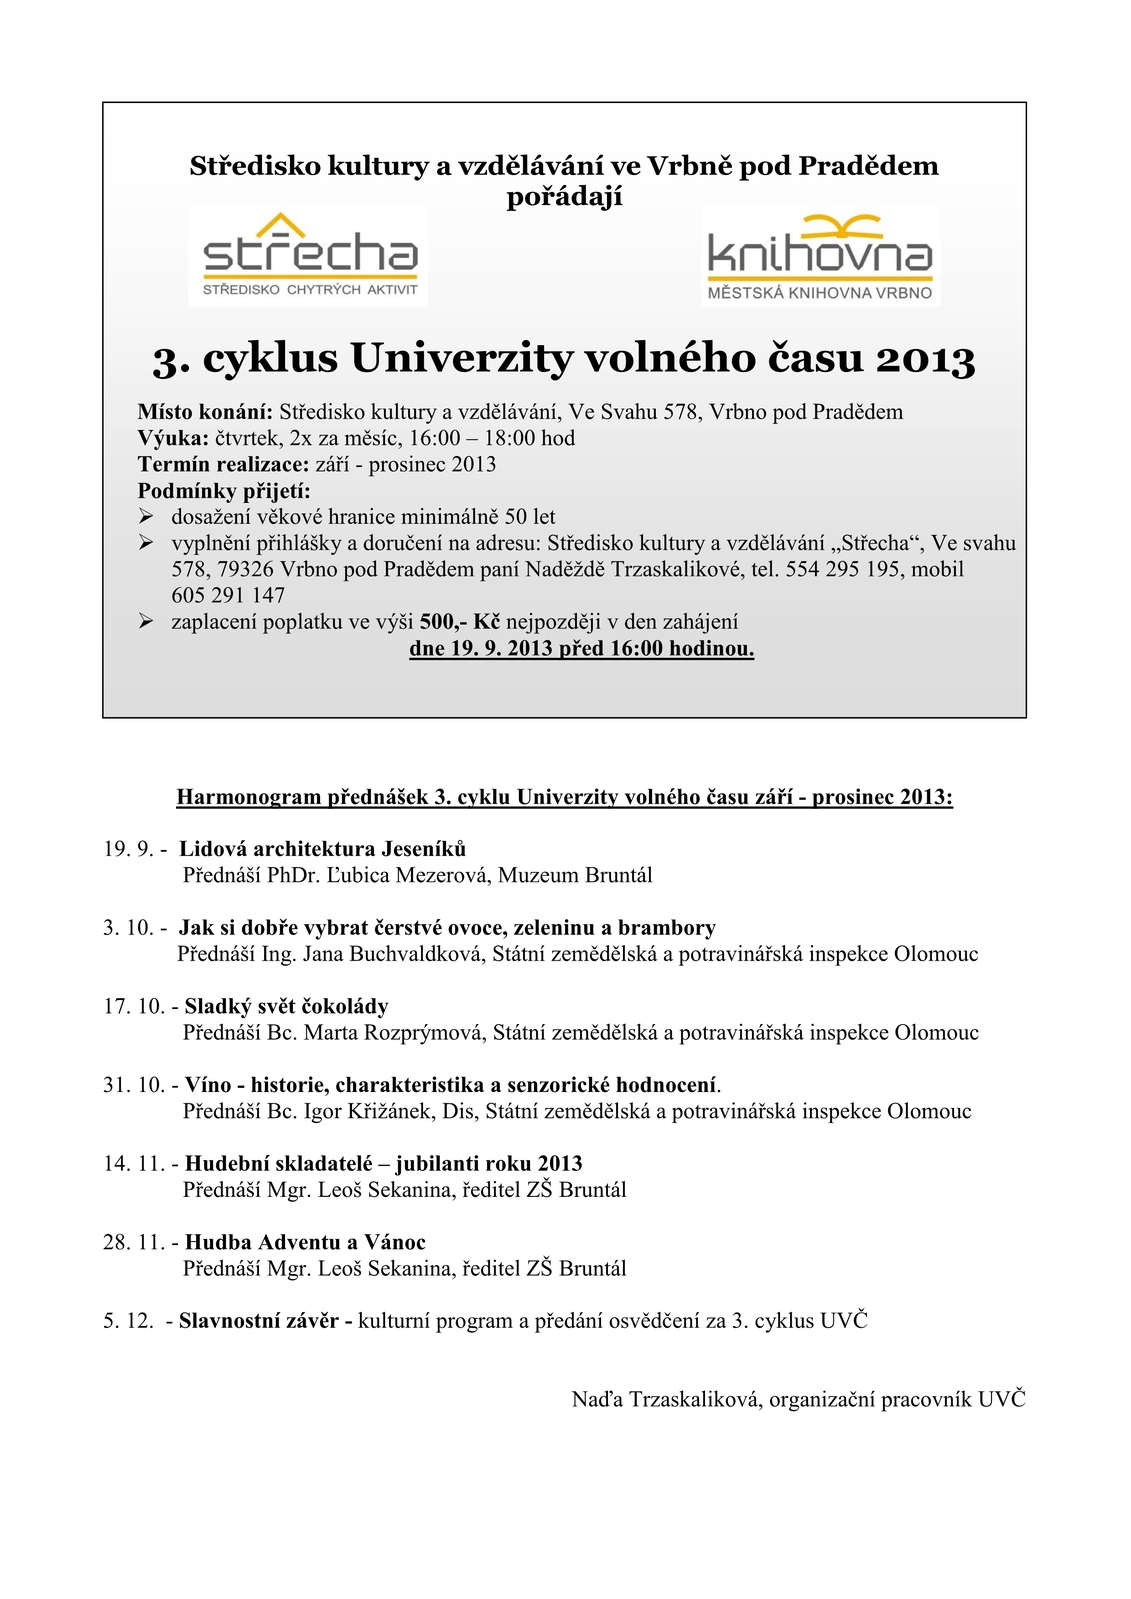 UVČ plakátek a Harmonogram přednášek 3. cyklus 2013- do zpravodaje-0001.jpeg